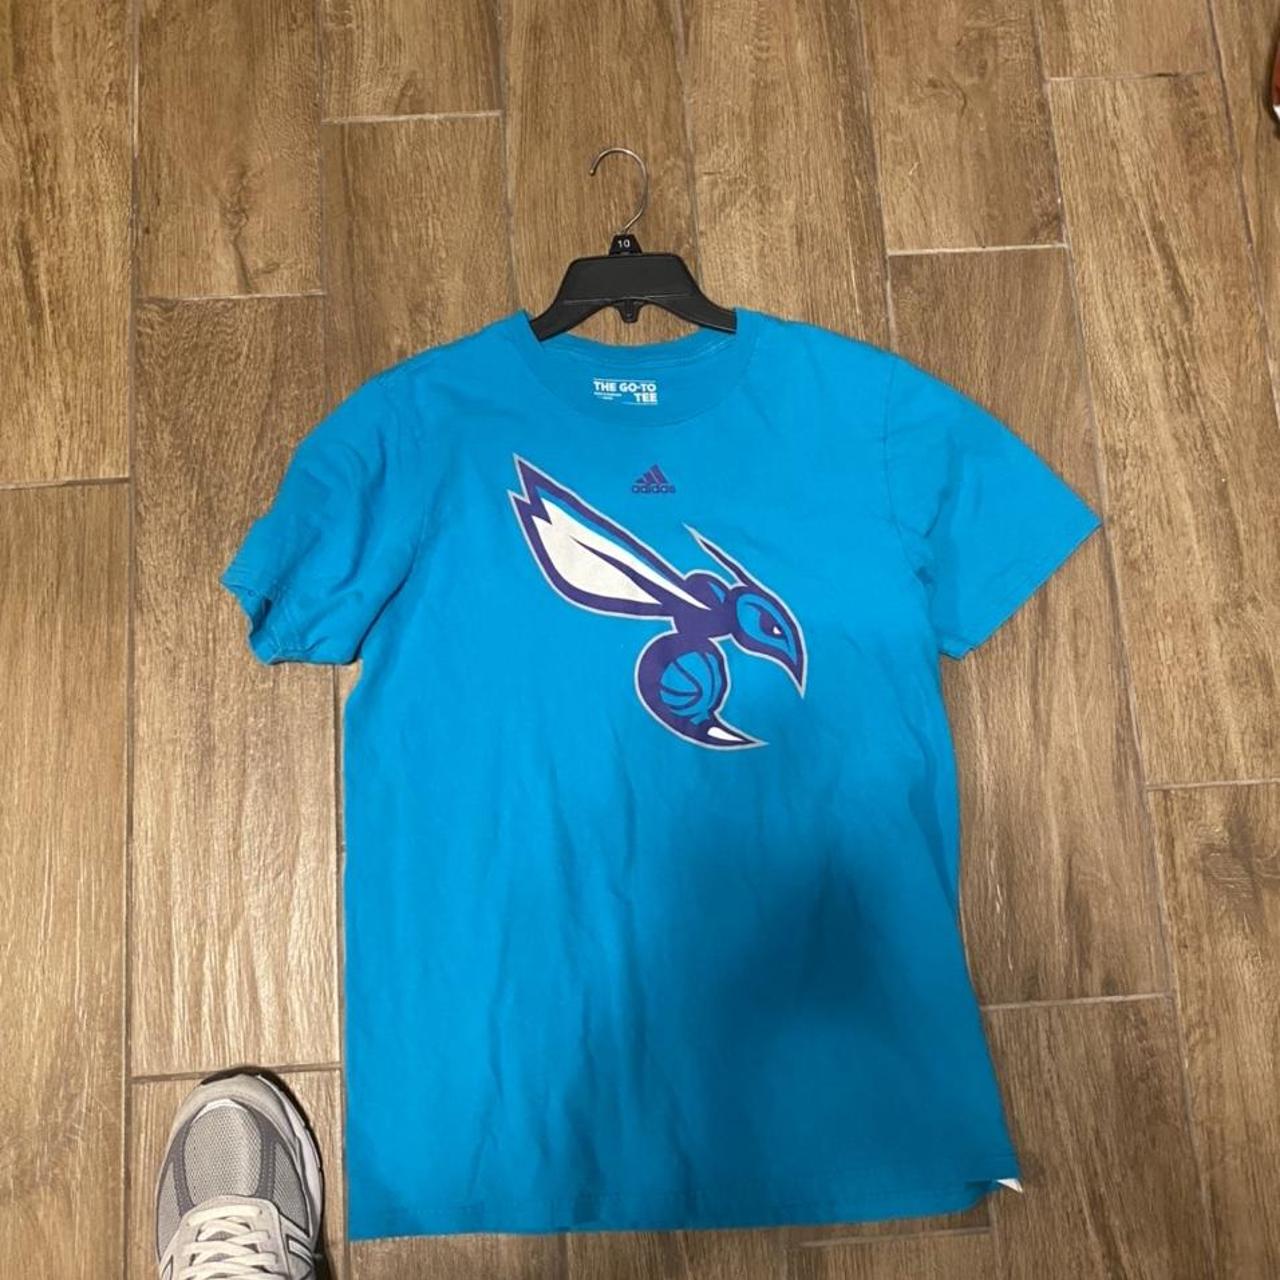 Nike Men's Charlotte Hornets Teal Logo T-Shirt, Medium, Blue